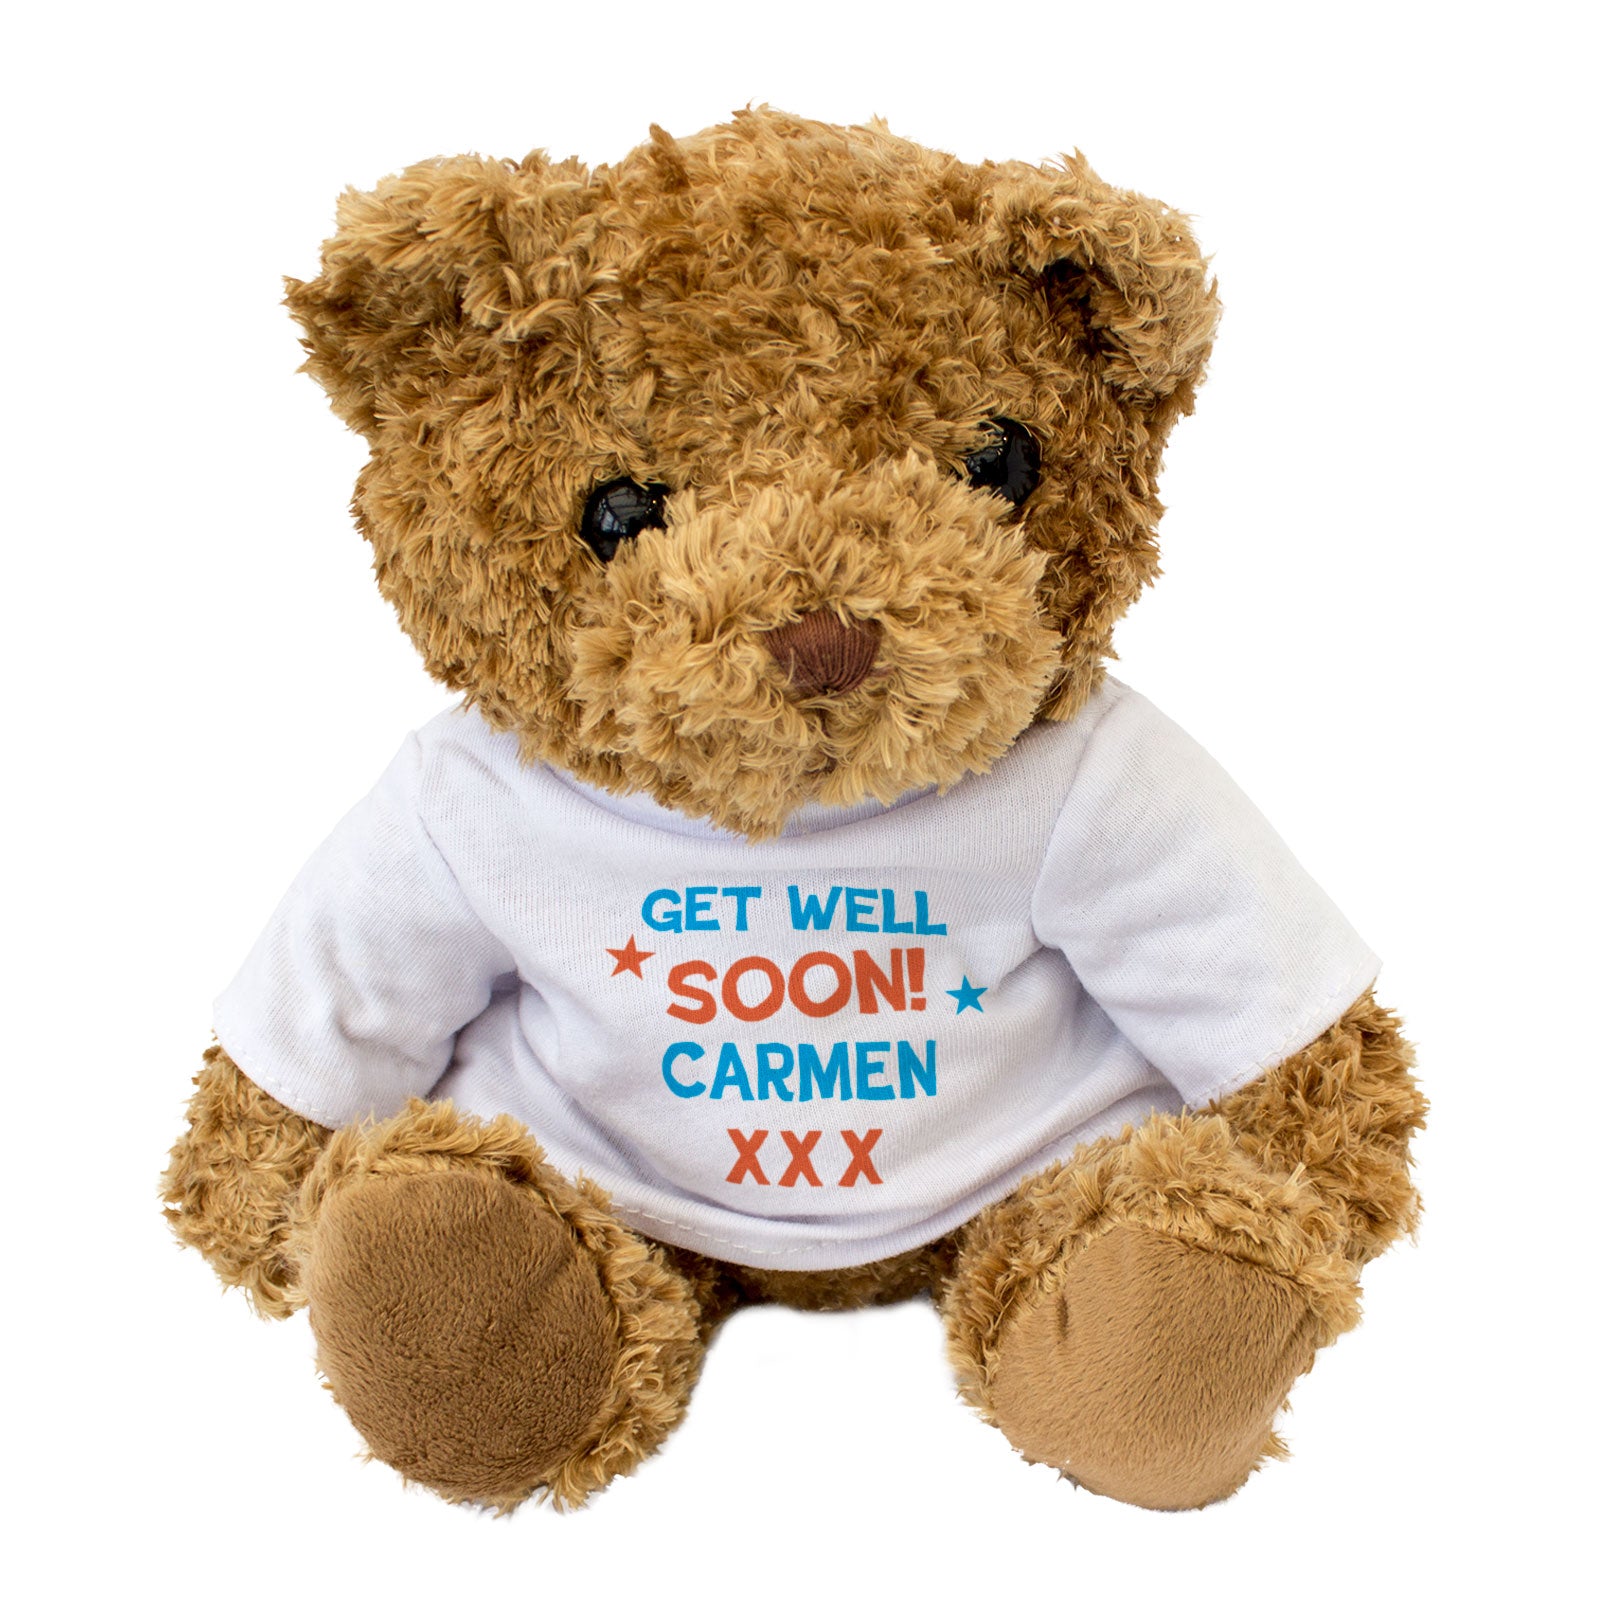 Get Well Soon Carmen - Teddy Bear